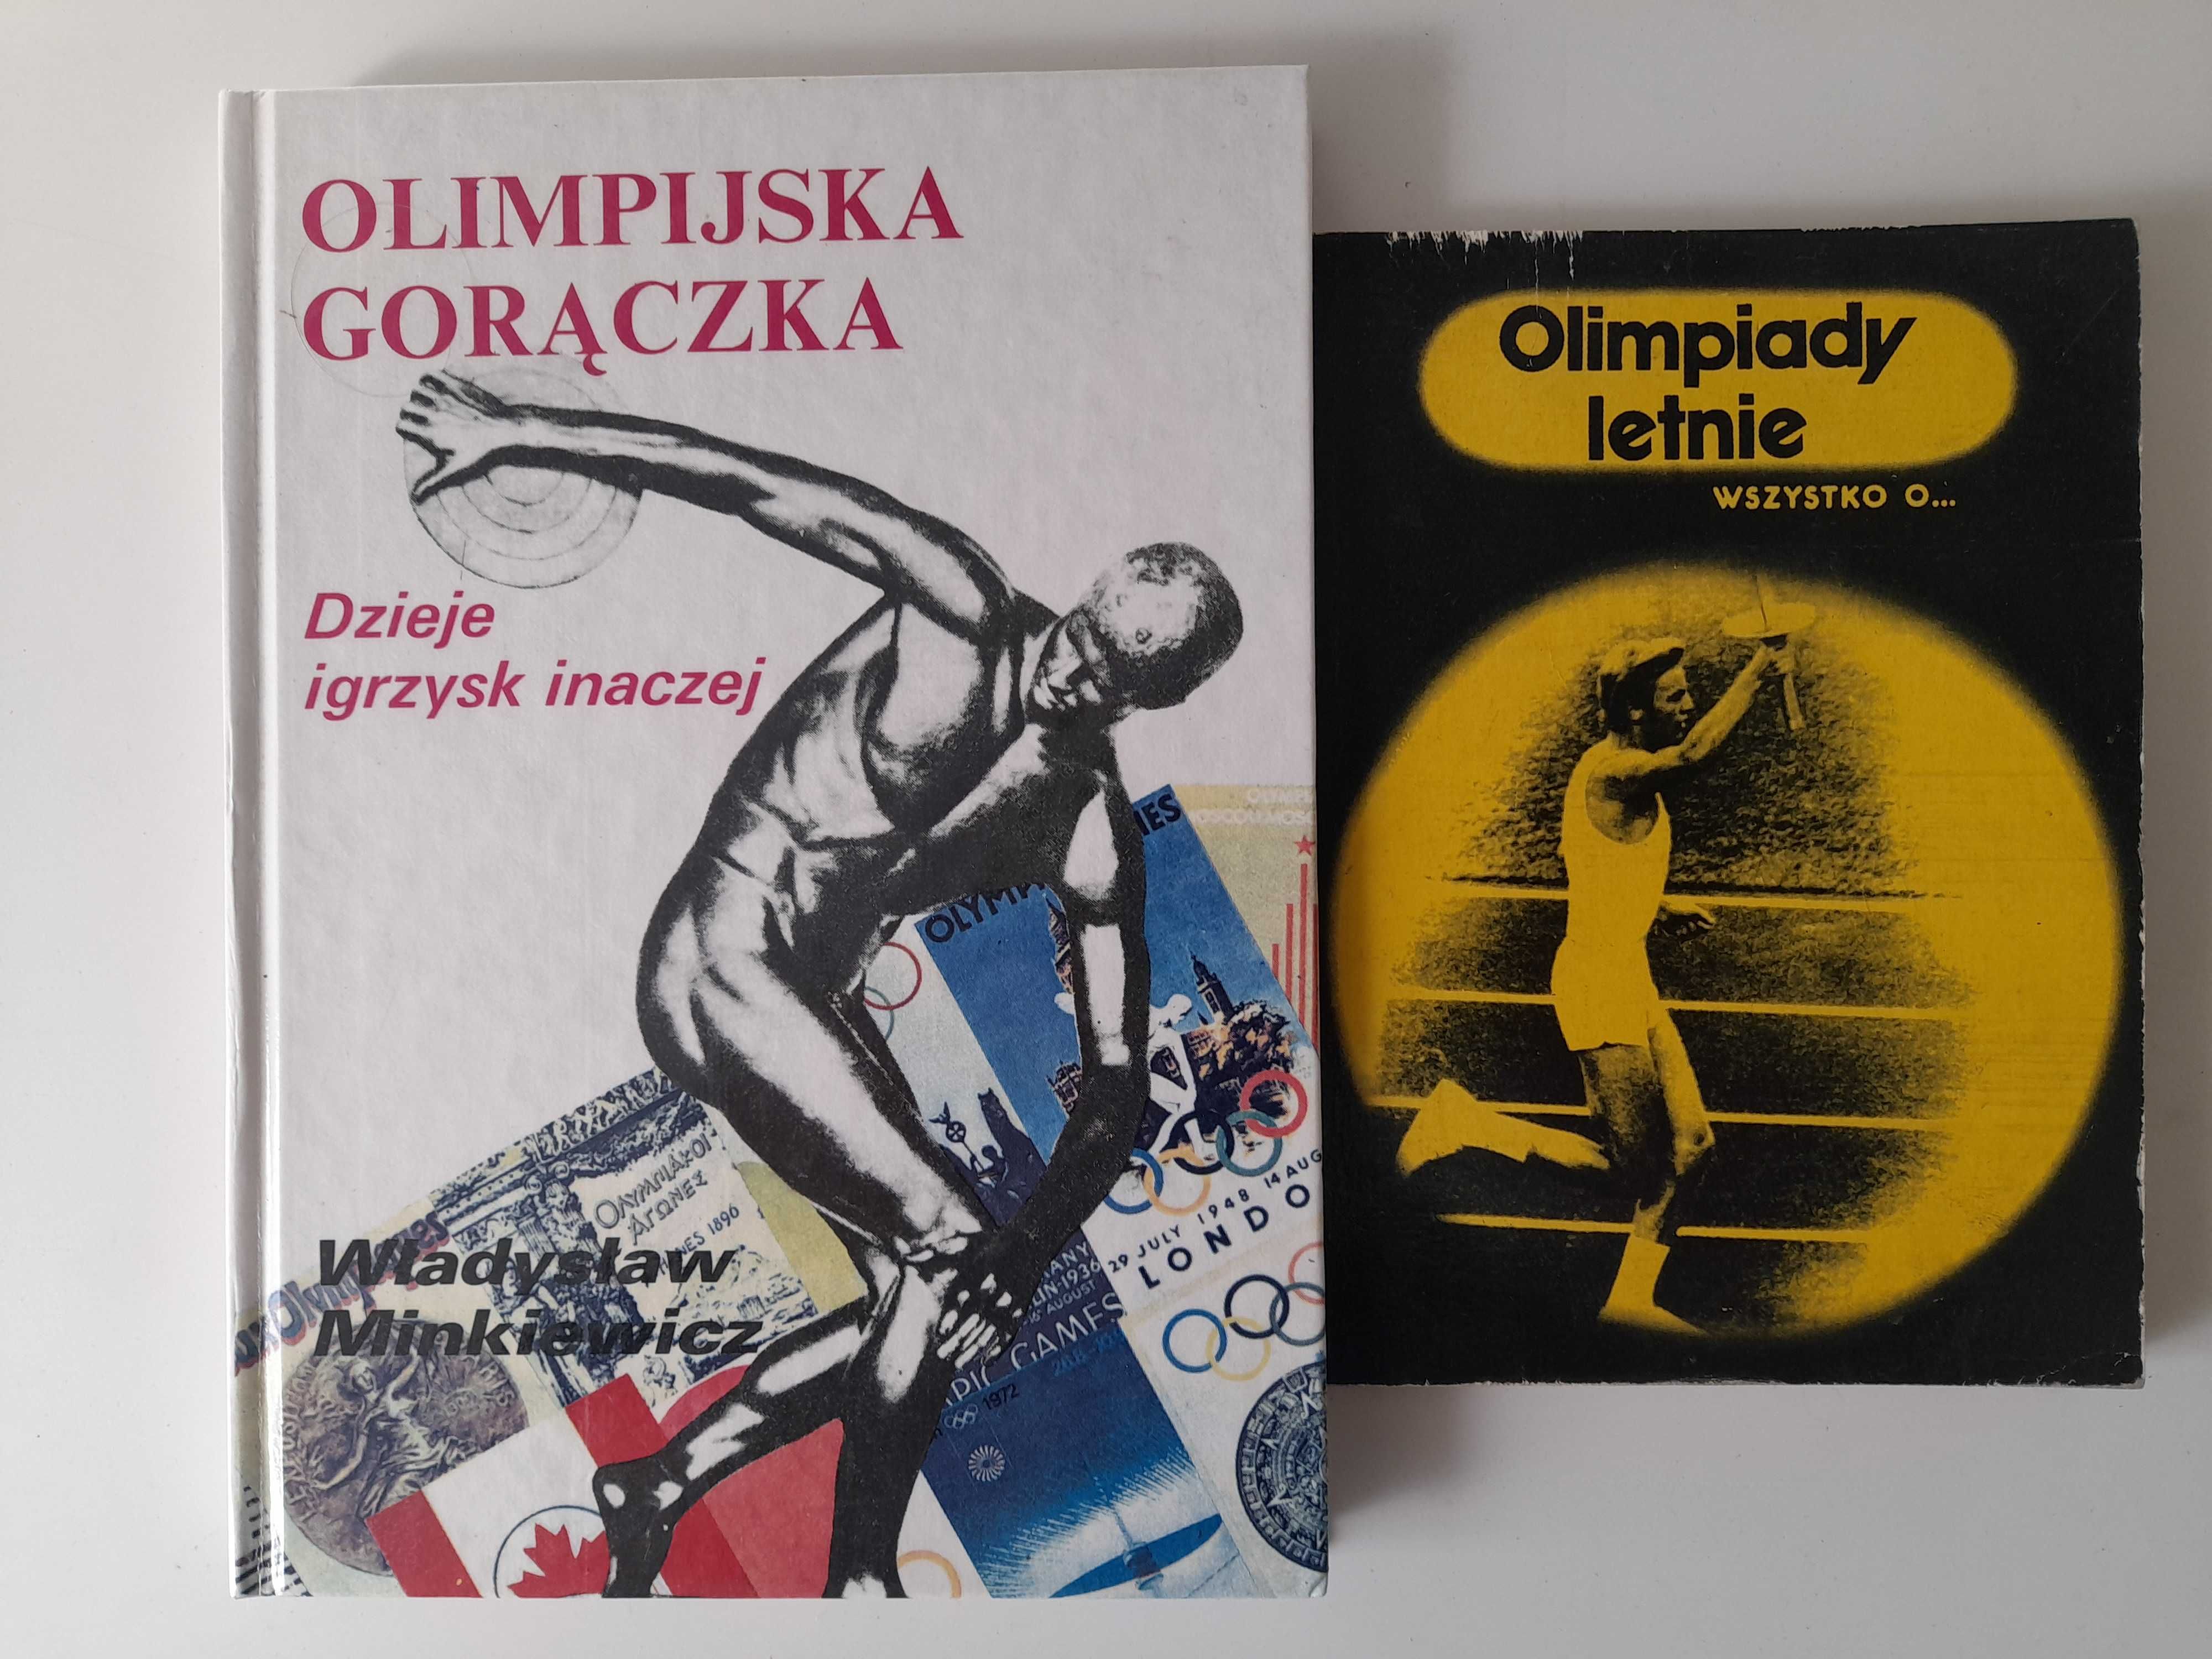 Olimpijska gorączka Wł. Minkiewicz, Olimpiady letnie T. Olszański